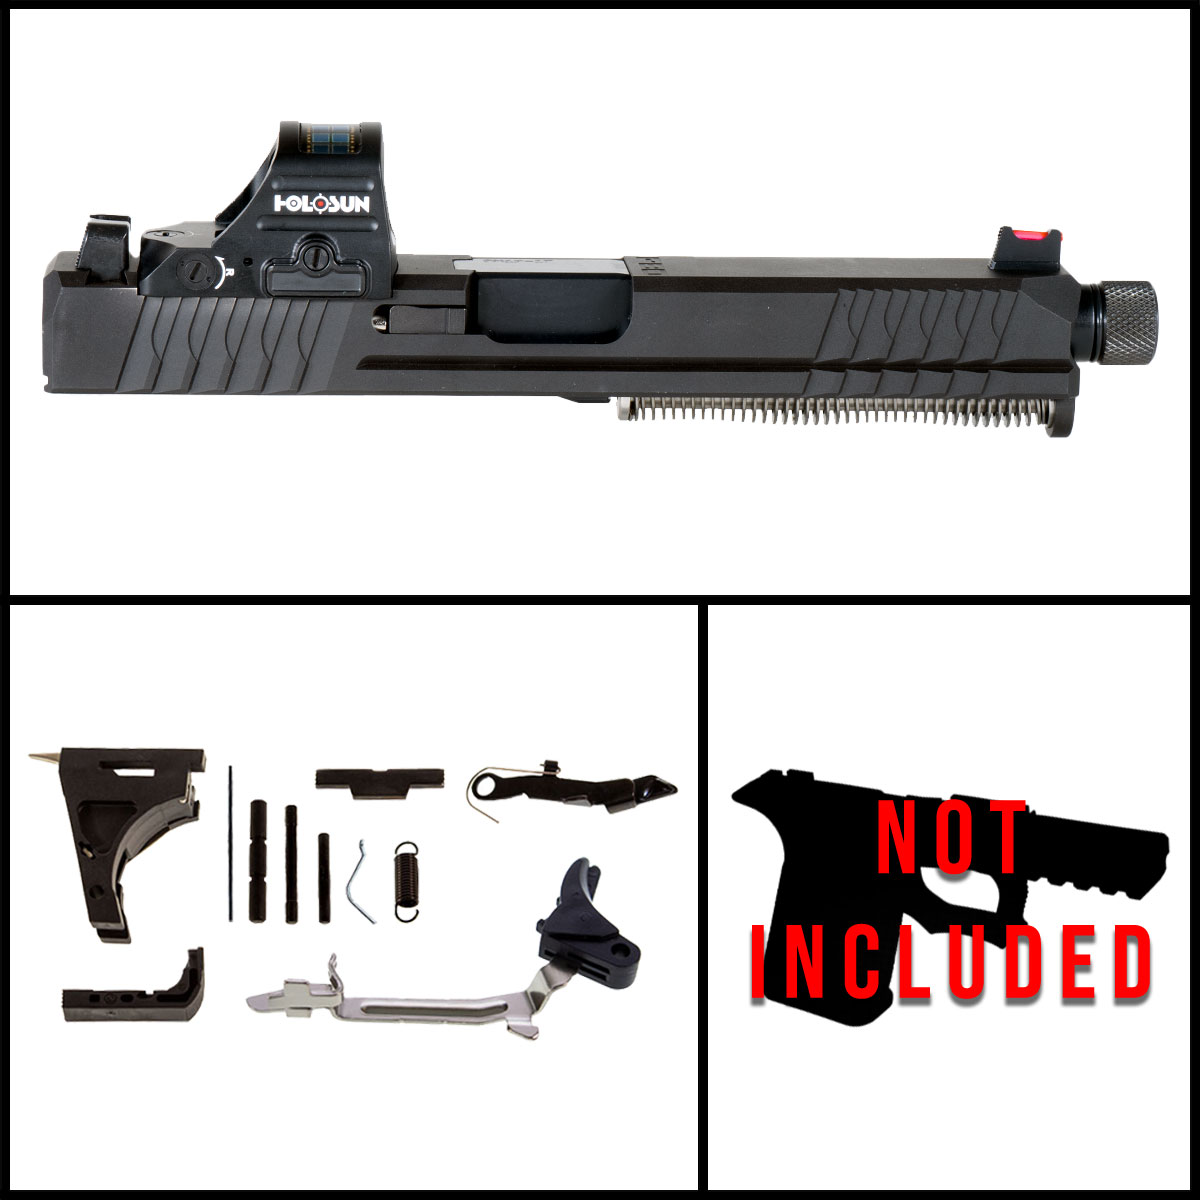 OTD 'Heartstone' 9mm Full Gun Kit (Everything minus Frame) - Glock 17 Gen 1-3 Compatible